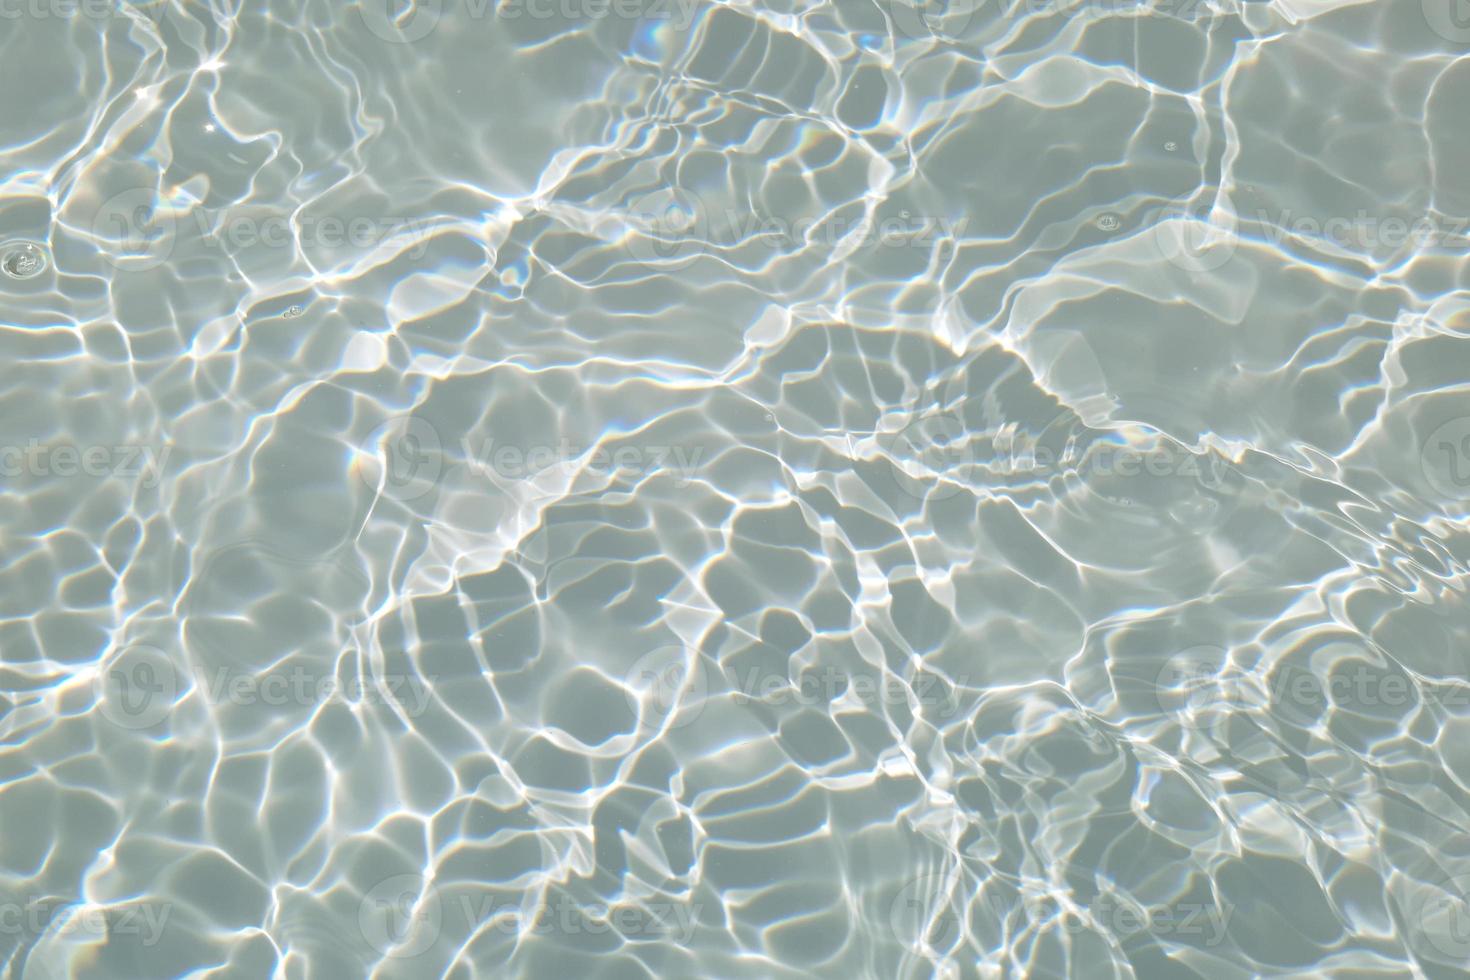 desenfoque agua azul borrosa en la piscina fondo de detalle de agua ondulada. superficie del agua en el mar, fondo del océano. El agua es inorgánica, transparente, insípida, inodora y casi incolora. foto